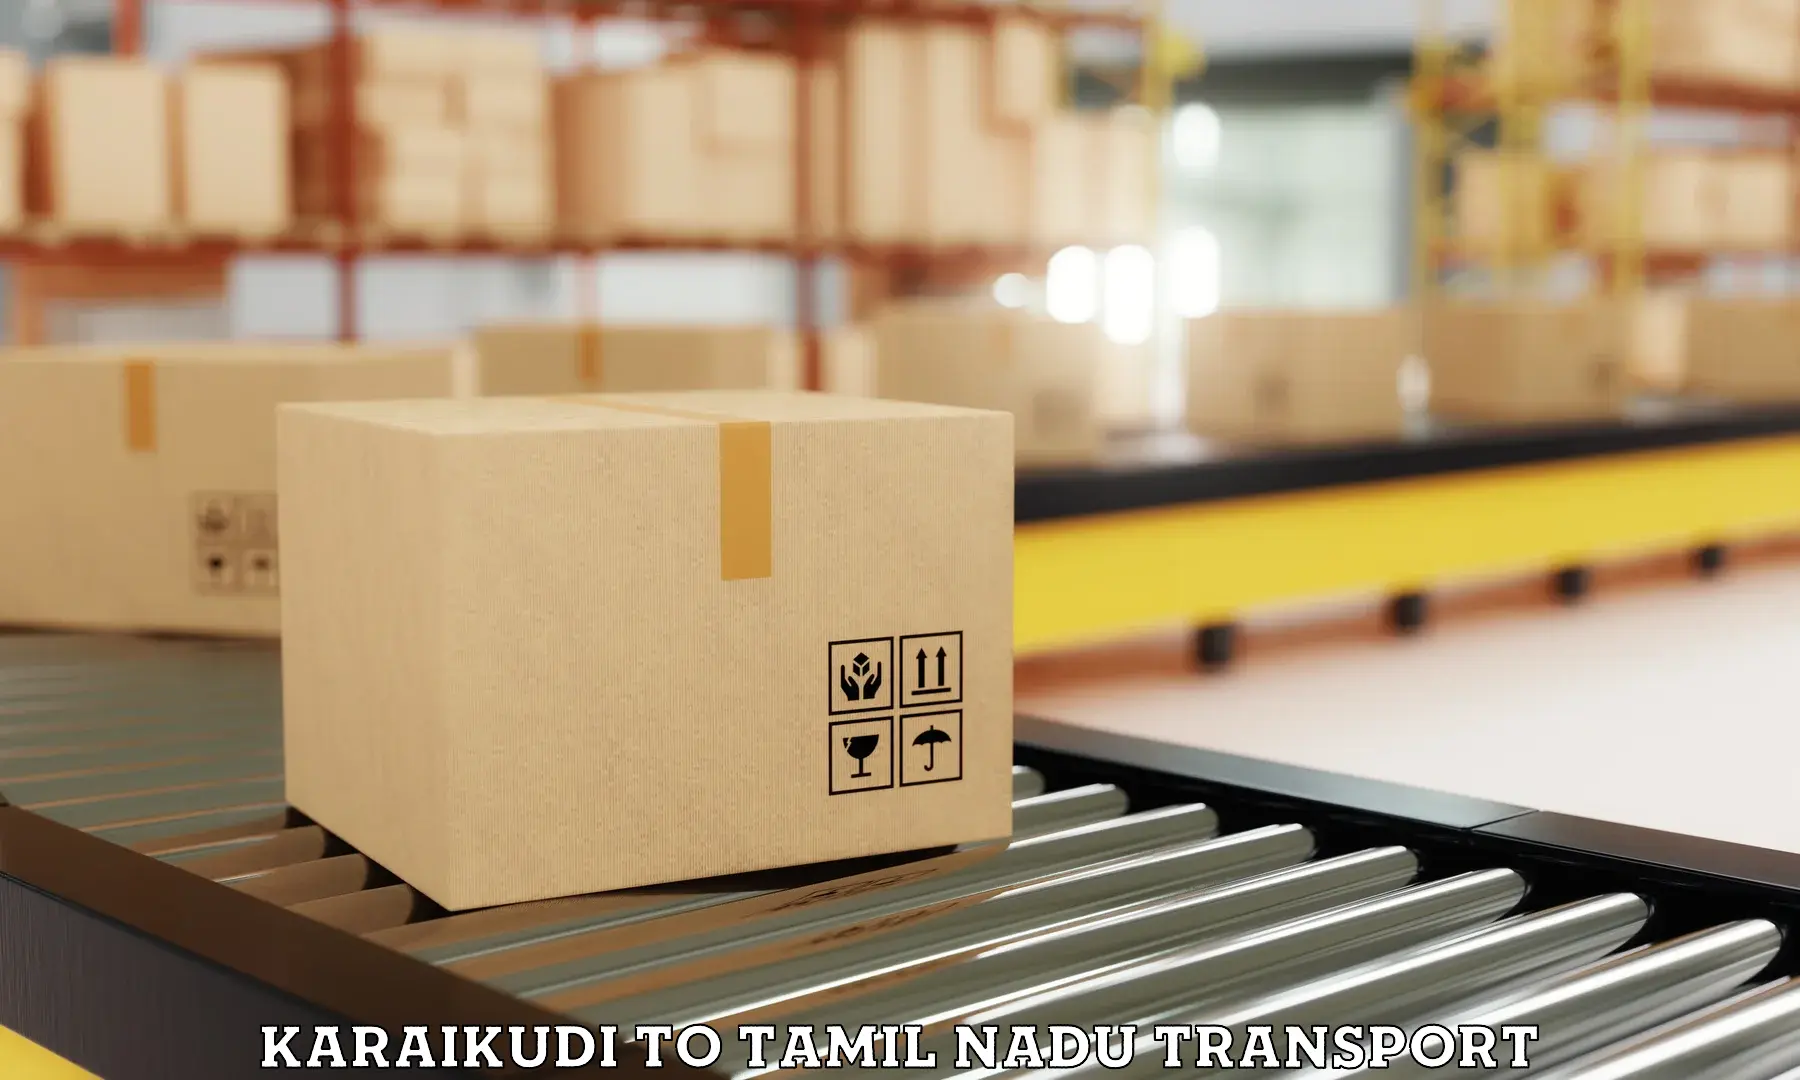 Lorry transport service Karaikudi to Coimbatore